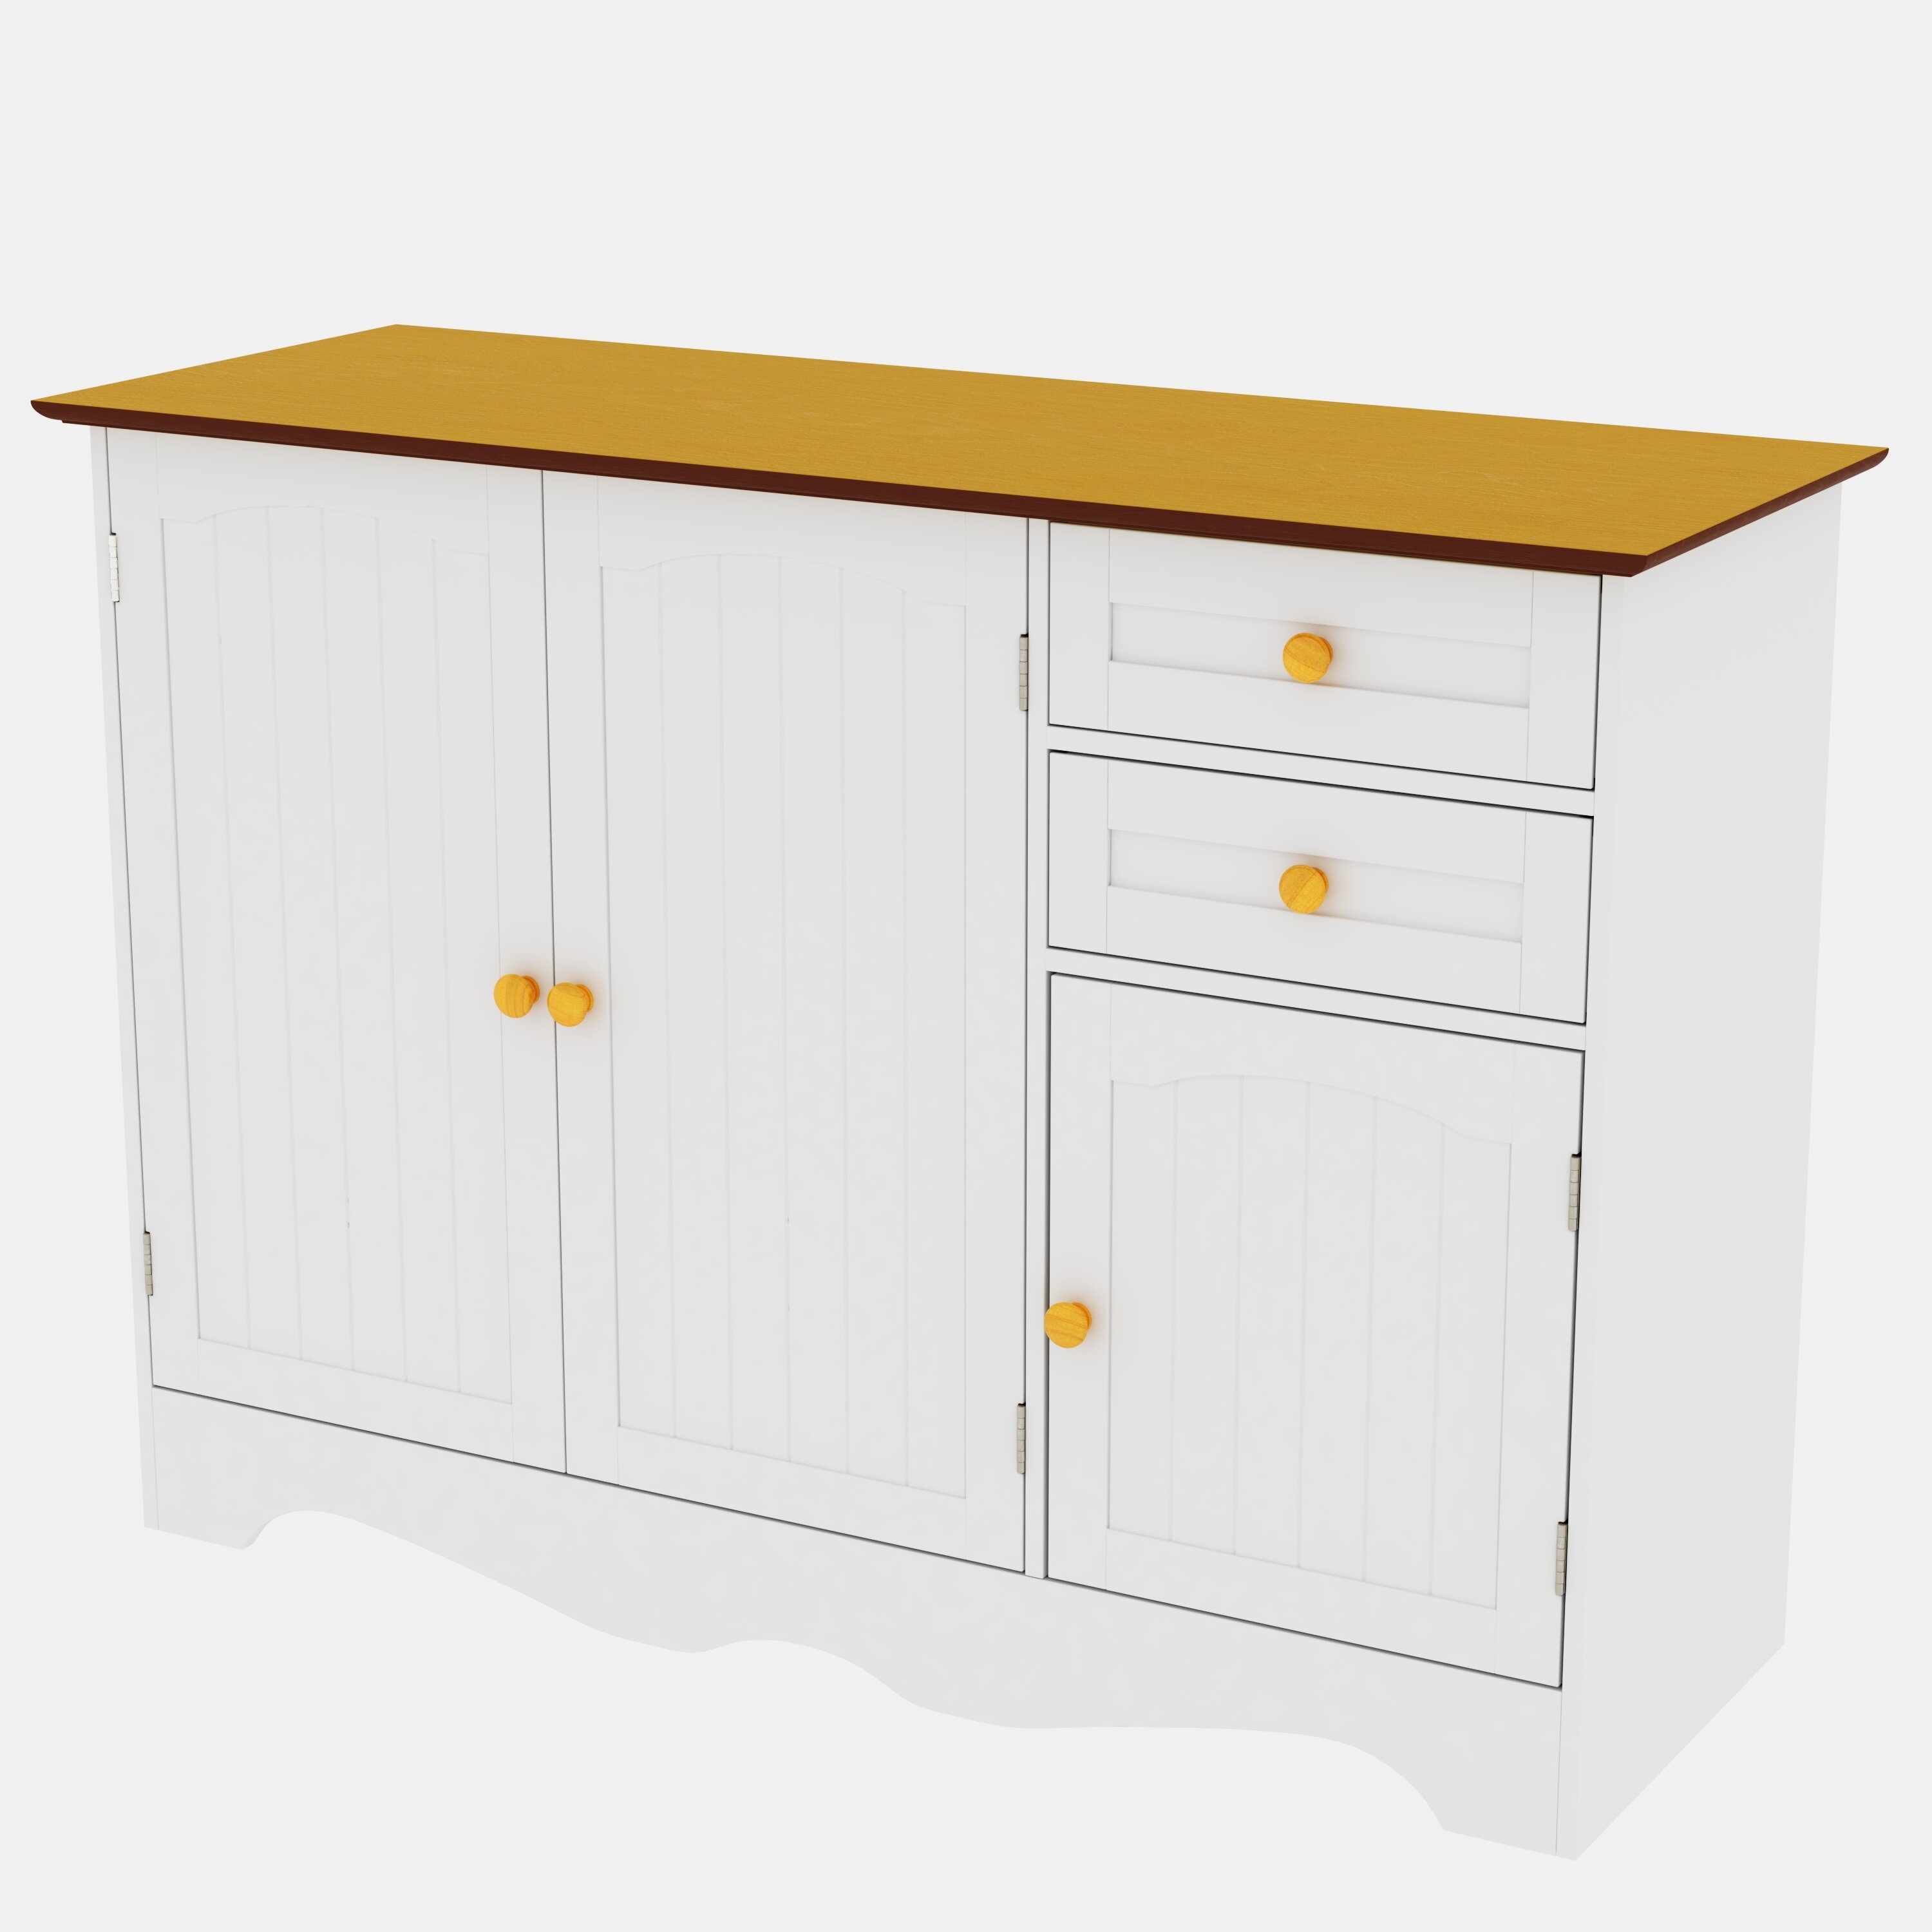 https://visualhunt.com/photos/23/schaumburg-shelves-14-deep-drawers-11-25-long-x-13-wide-x-4-deep-kitchen-pantry.jpg